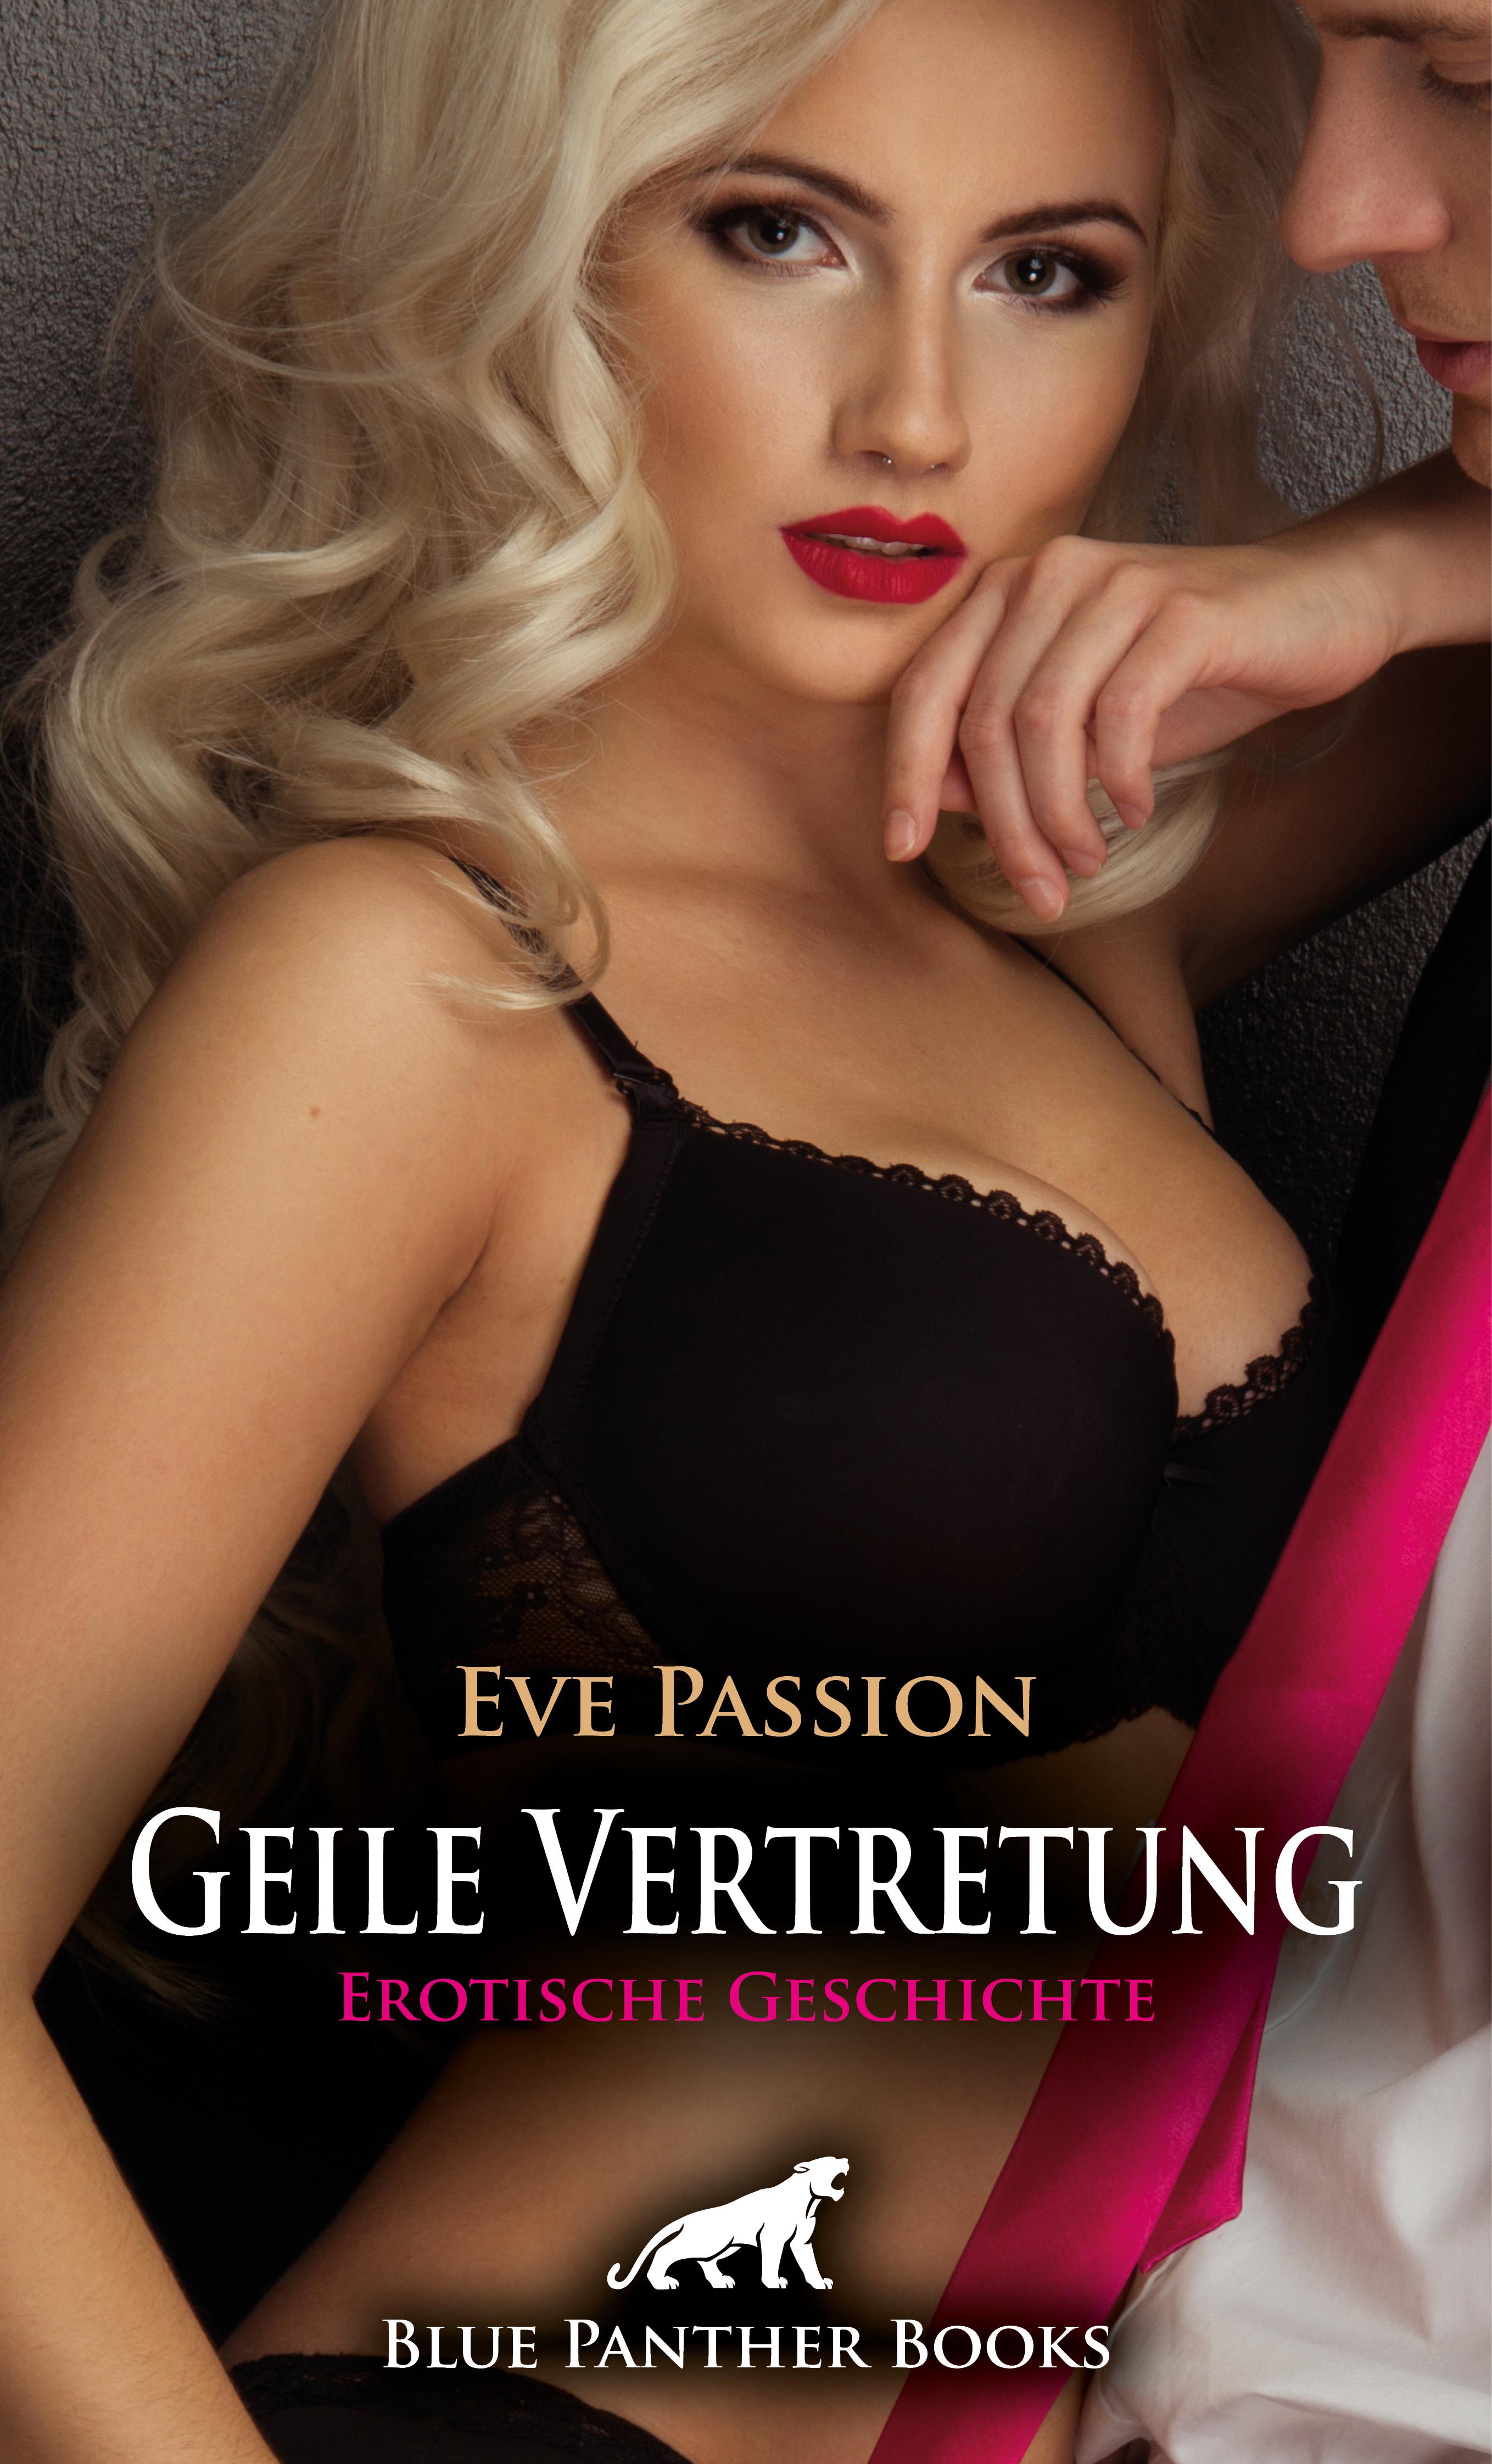 Geile Vertretung Erotische Geschichte (Eve Passion, blue panther books Bild Foto